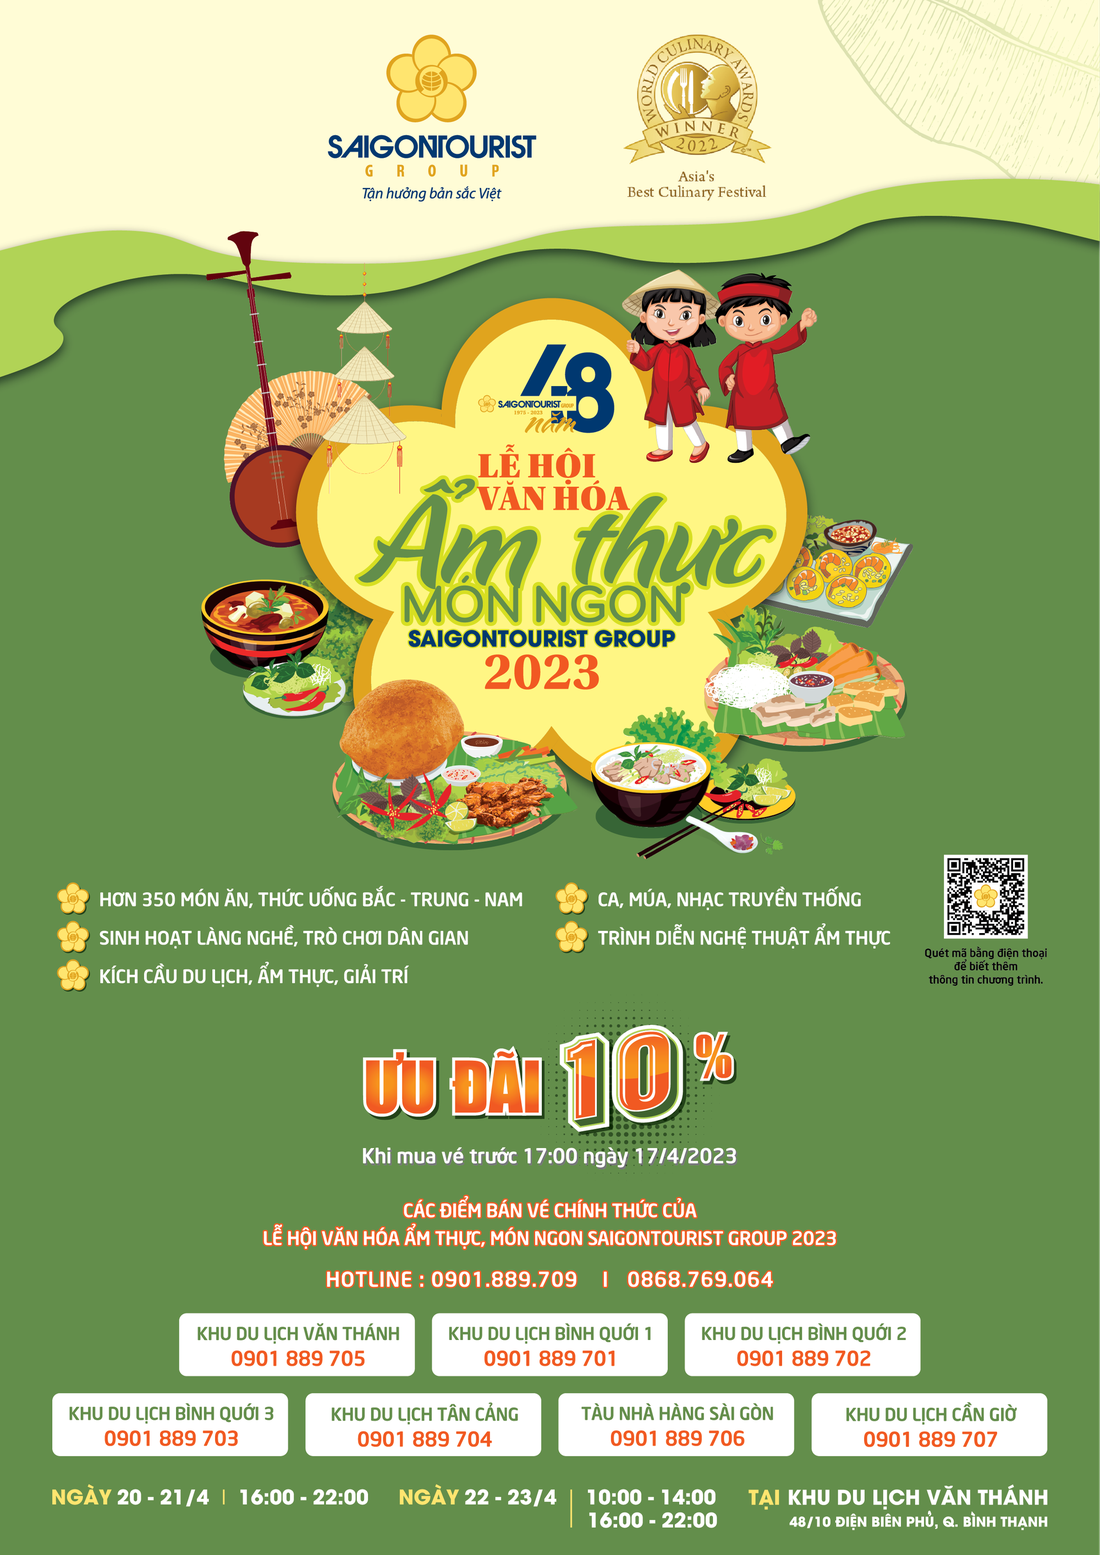 Mở bán vé lễ hội ẩm thực món ngon Saigontourist Group 2023 - Ảnh 1.